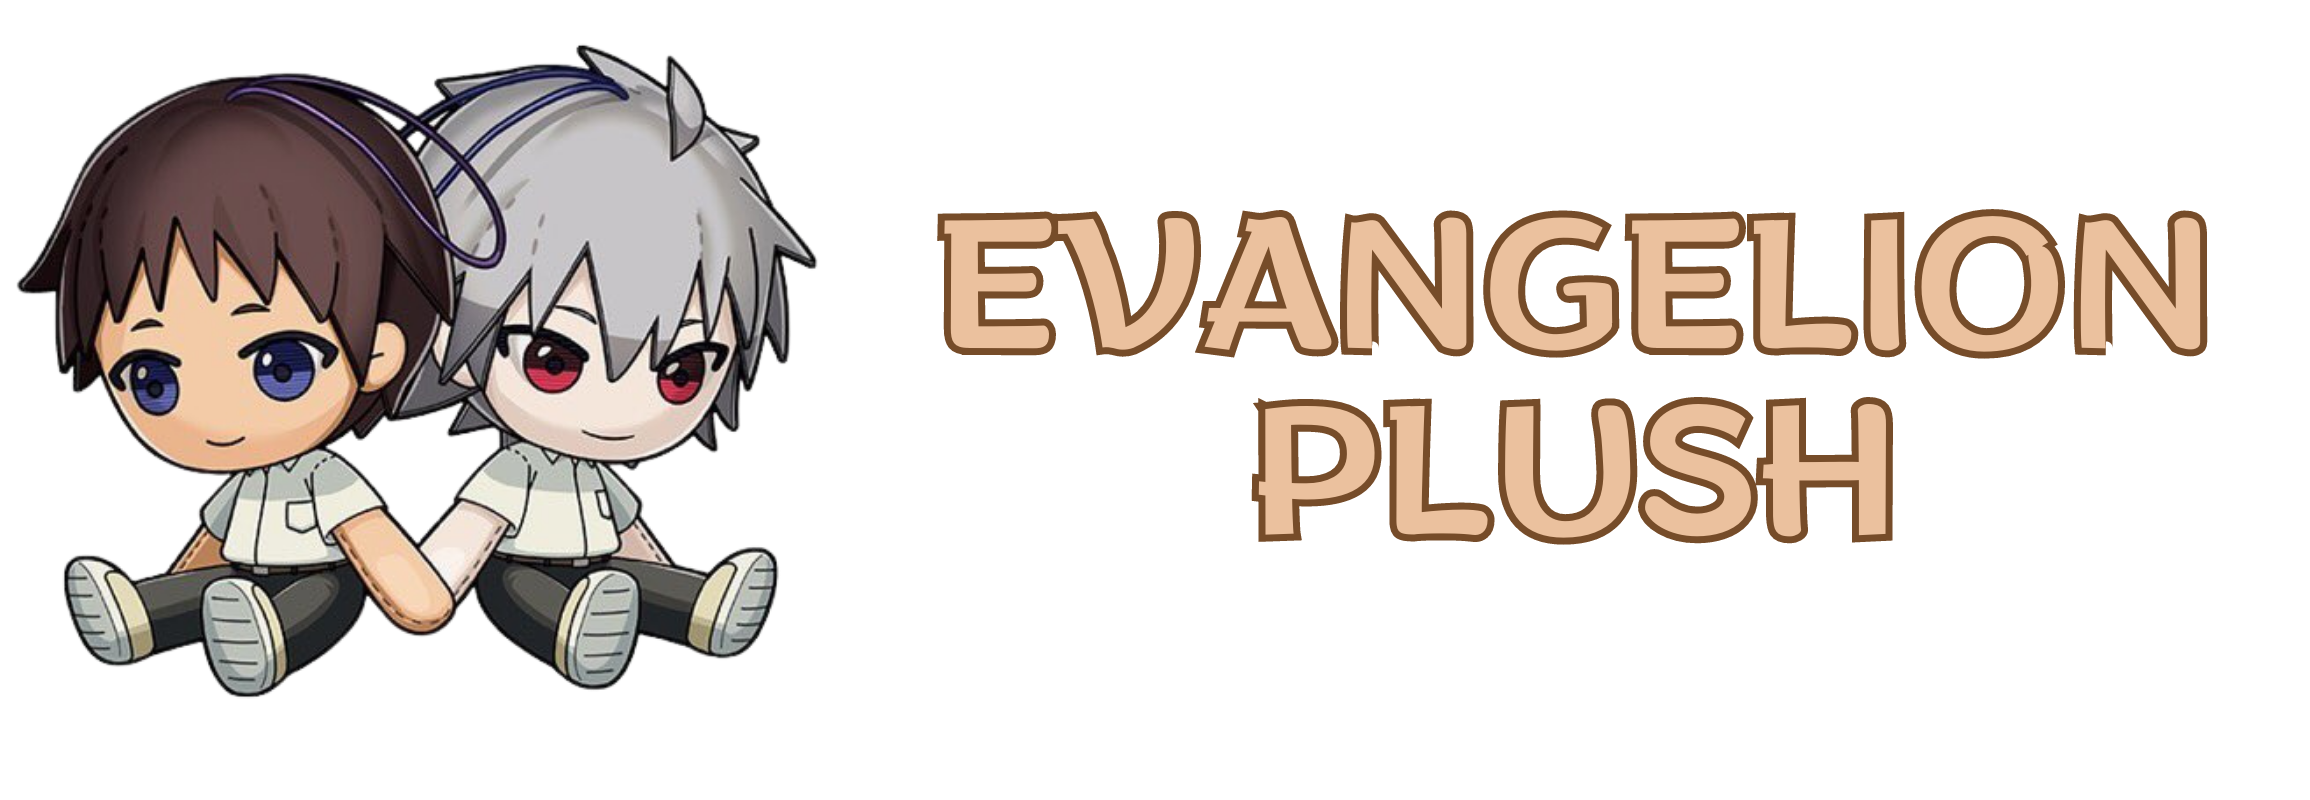 Evangelion Plush